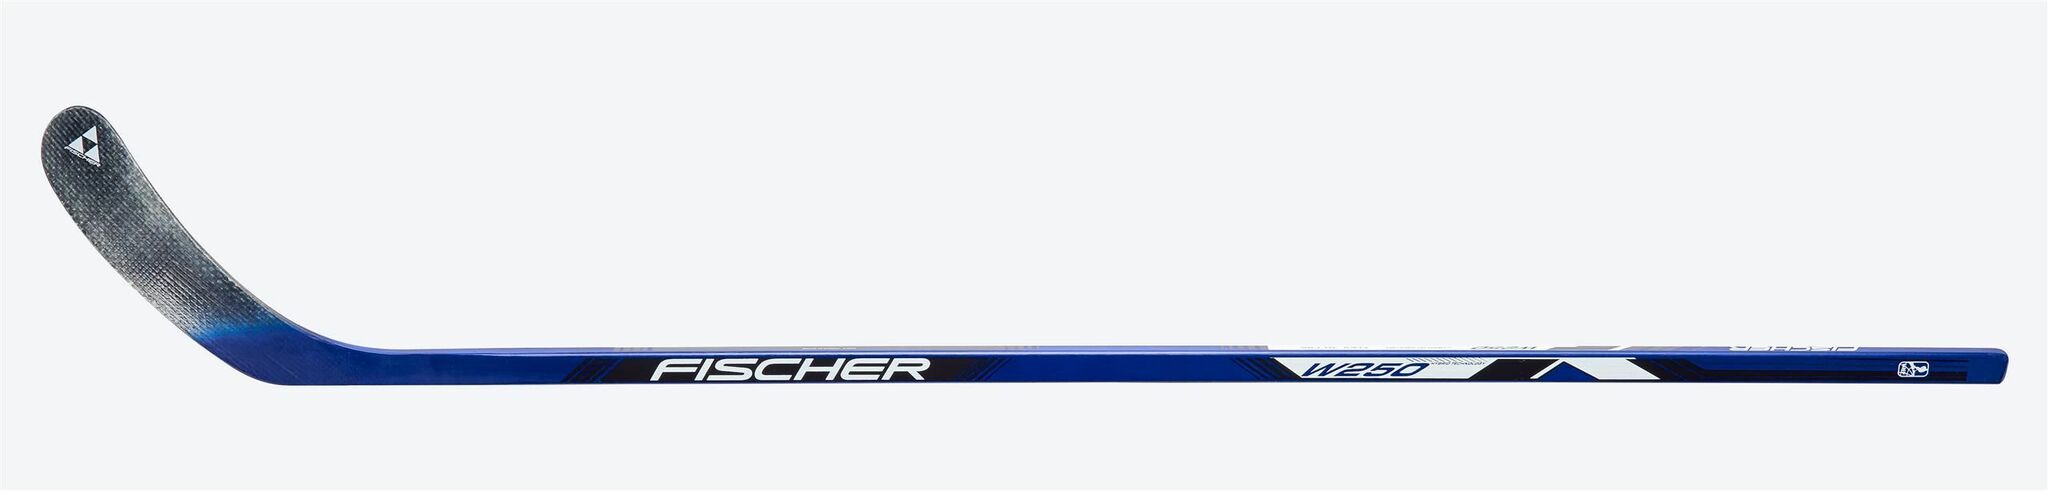 Se W250 SR ishockeystav - Fischer hos Sportnordica.dk